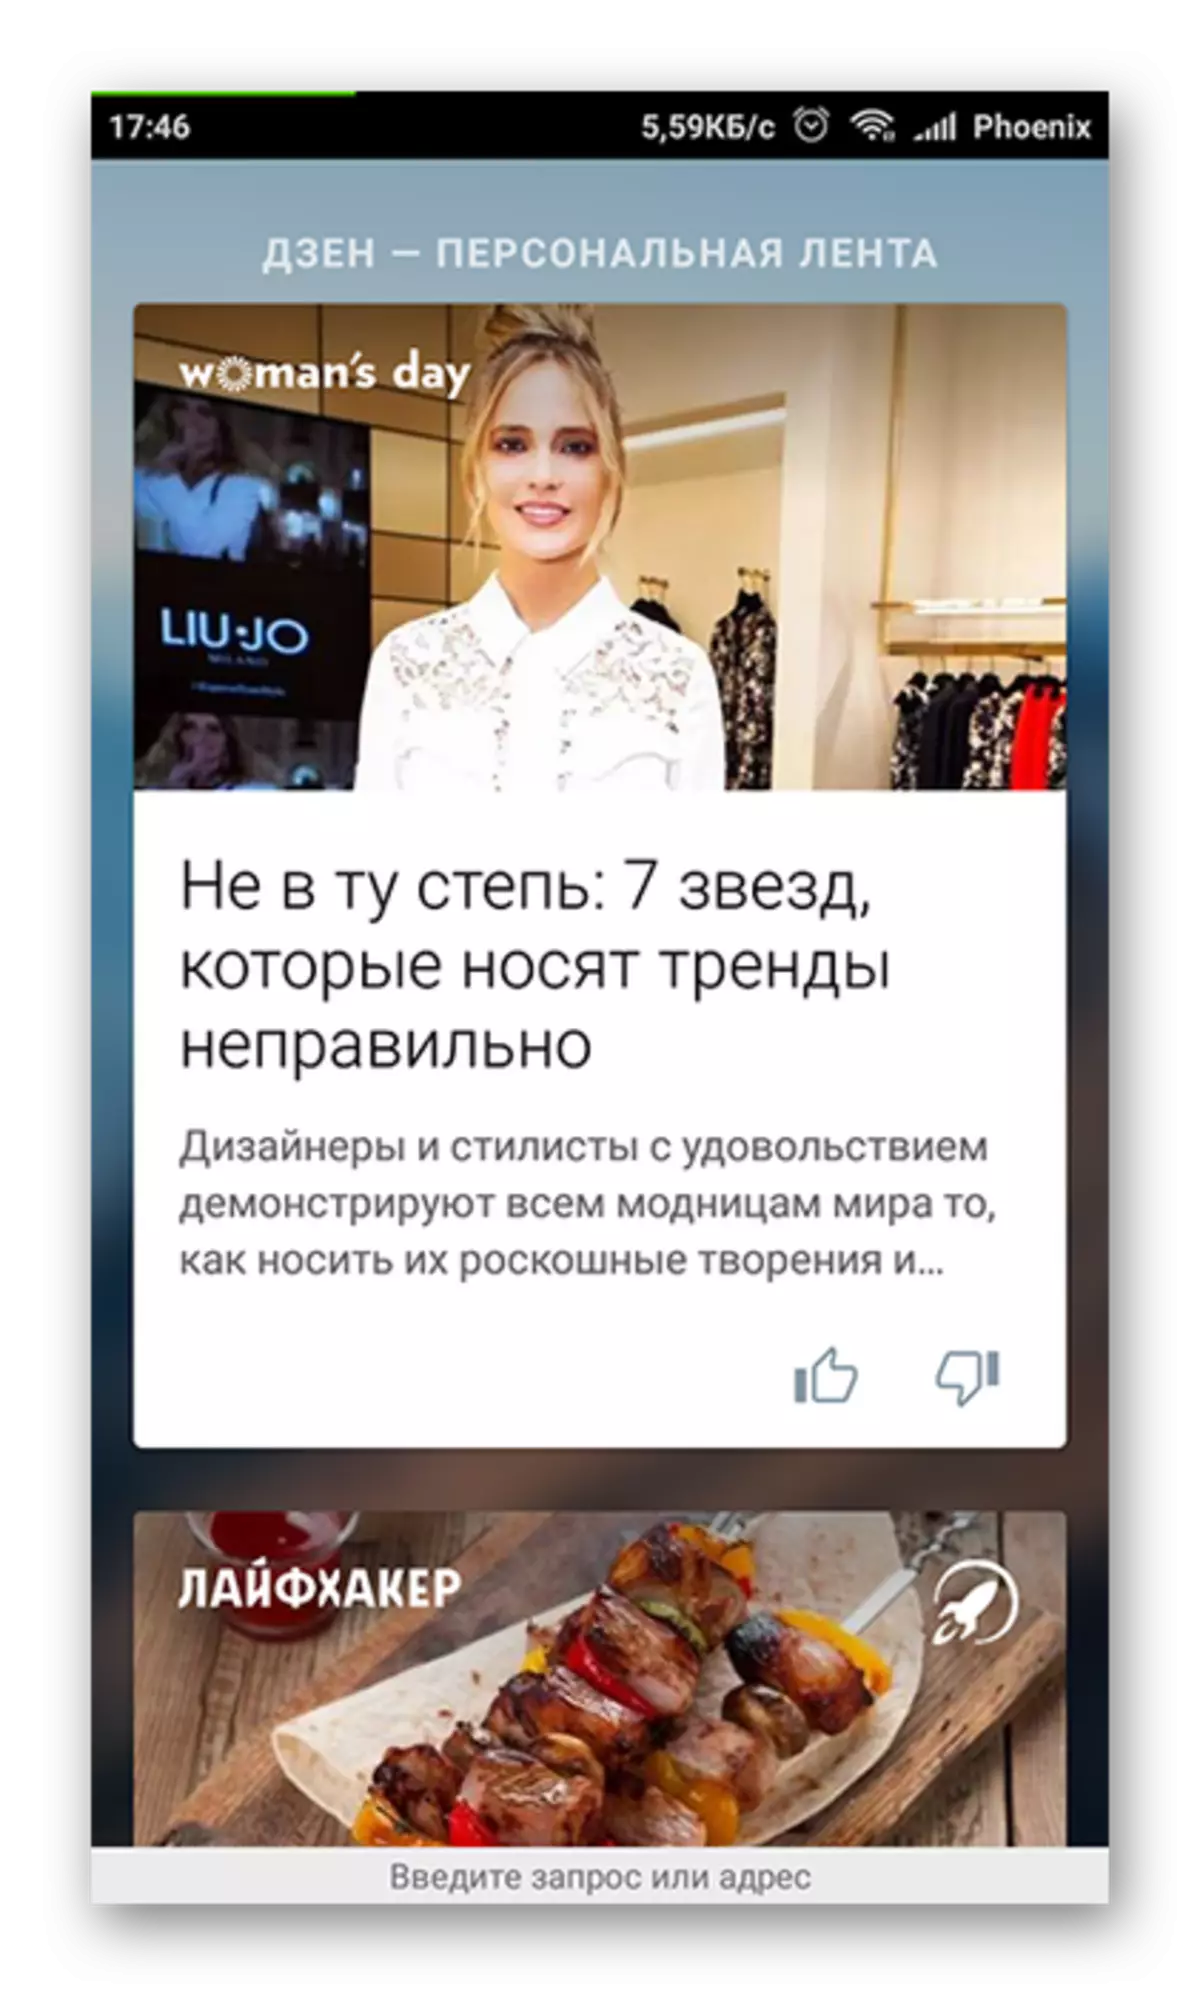 Yandex.dzen a Android